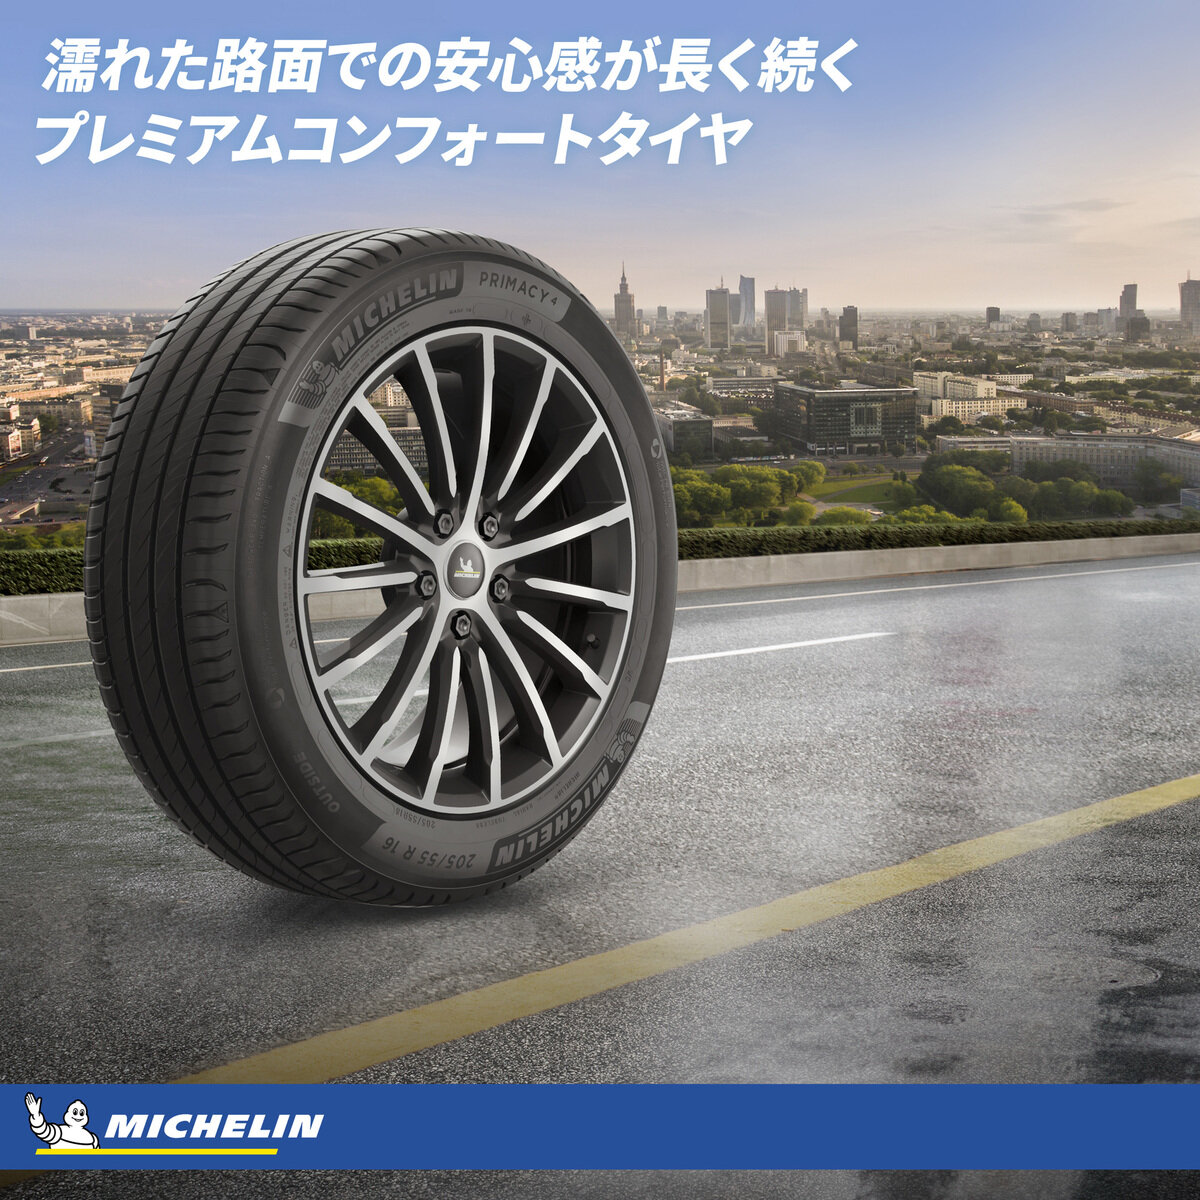 Michelin 225/45 R18 95Y XL TL PRIMACY 4+ MI | Costco Japan